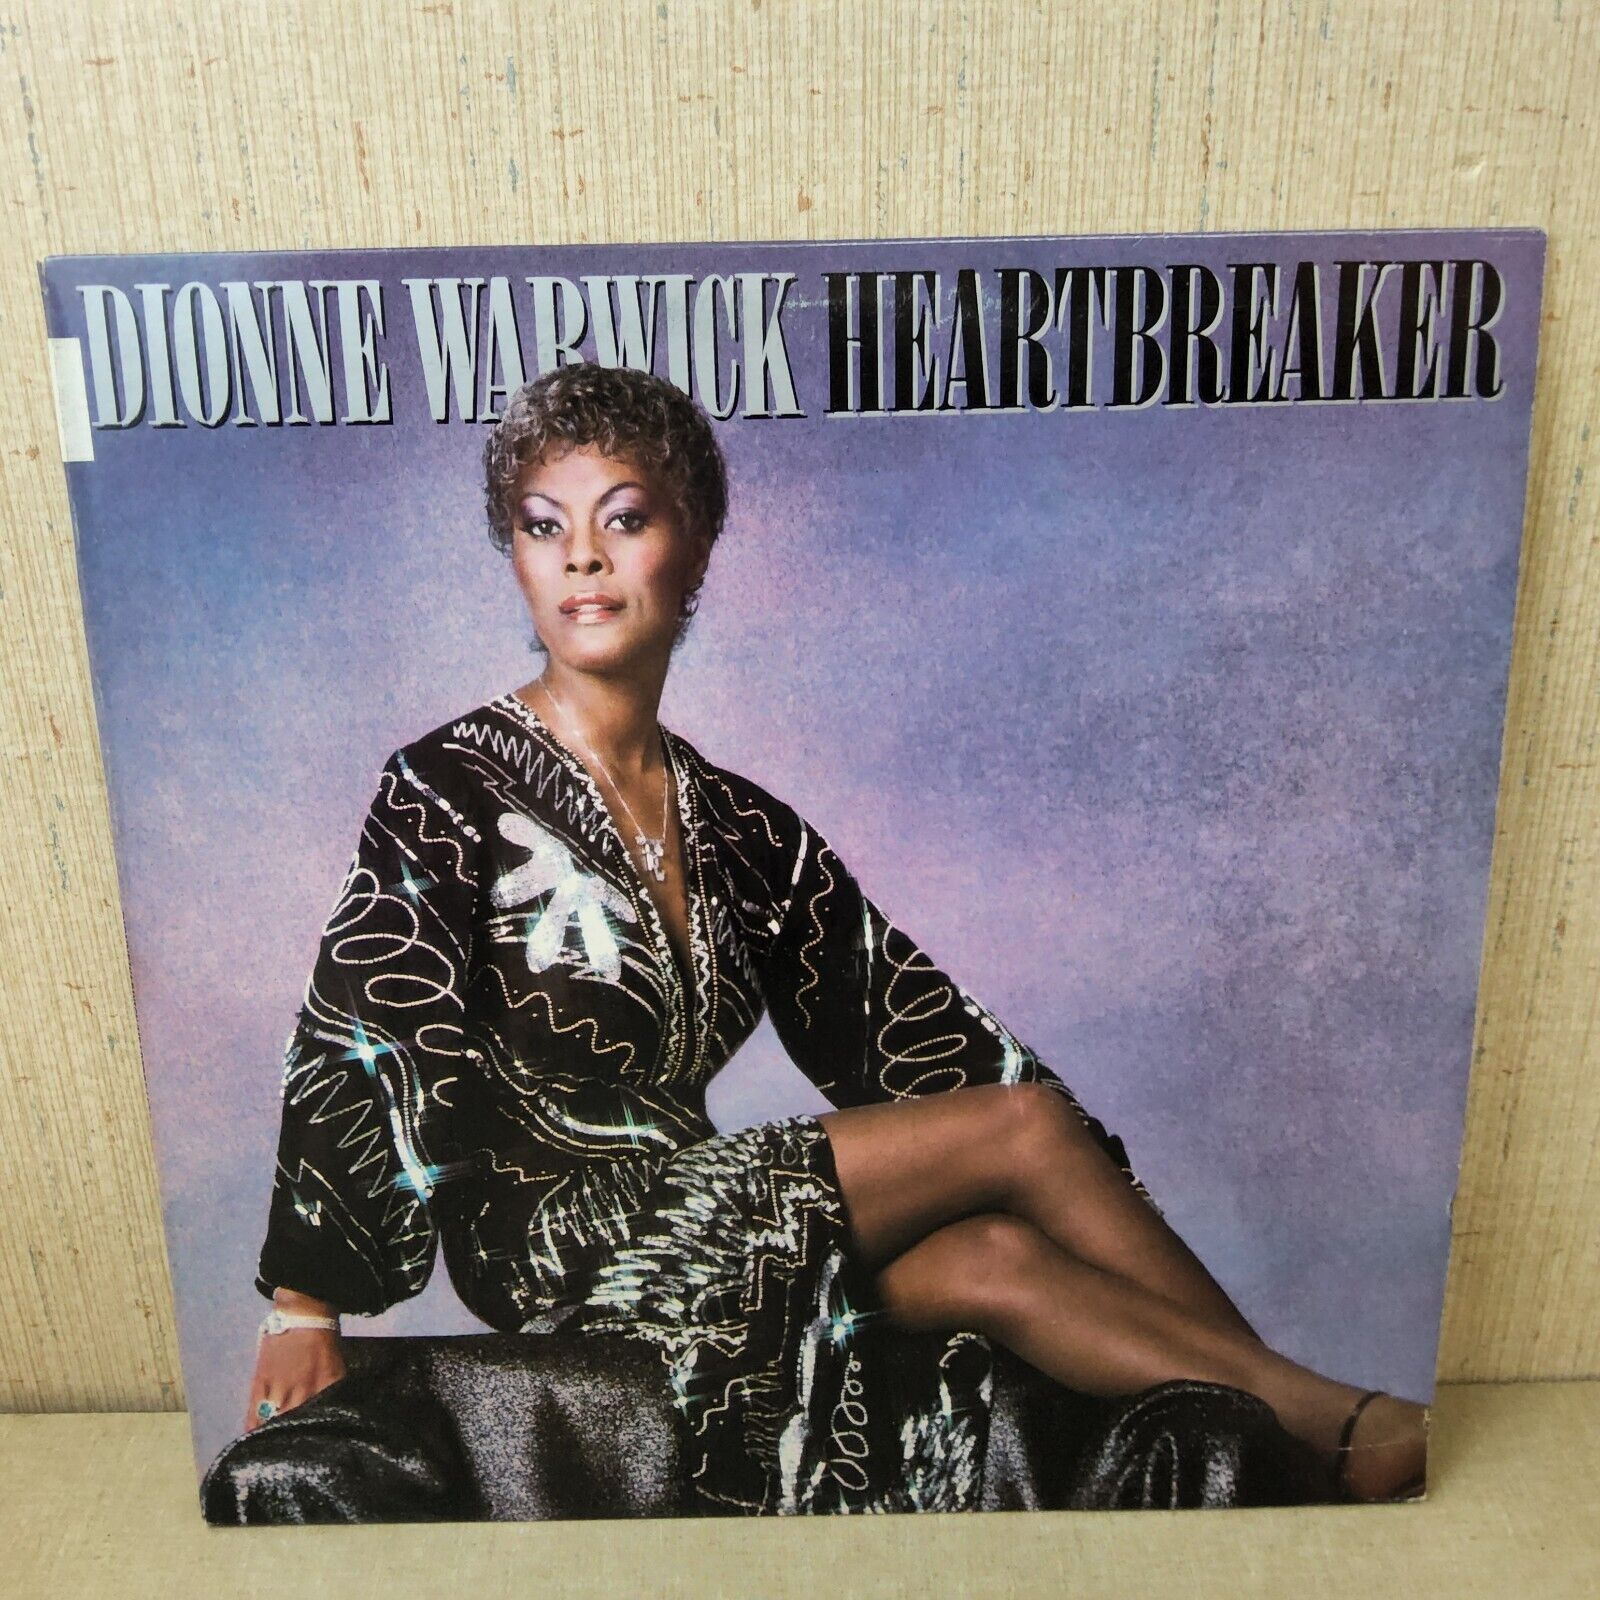 Dionne Warwick Heart Breaker LP Record